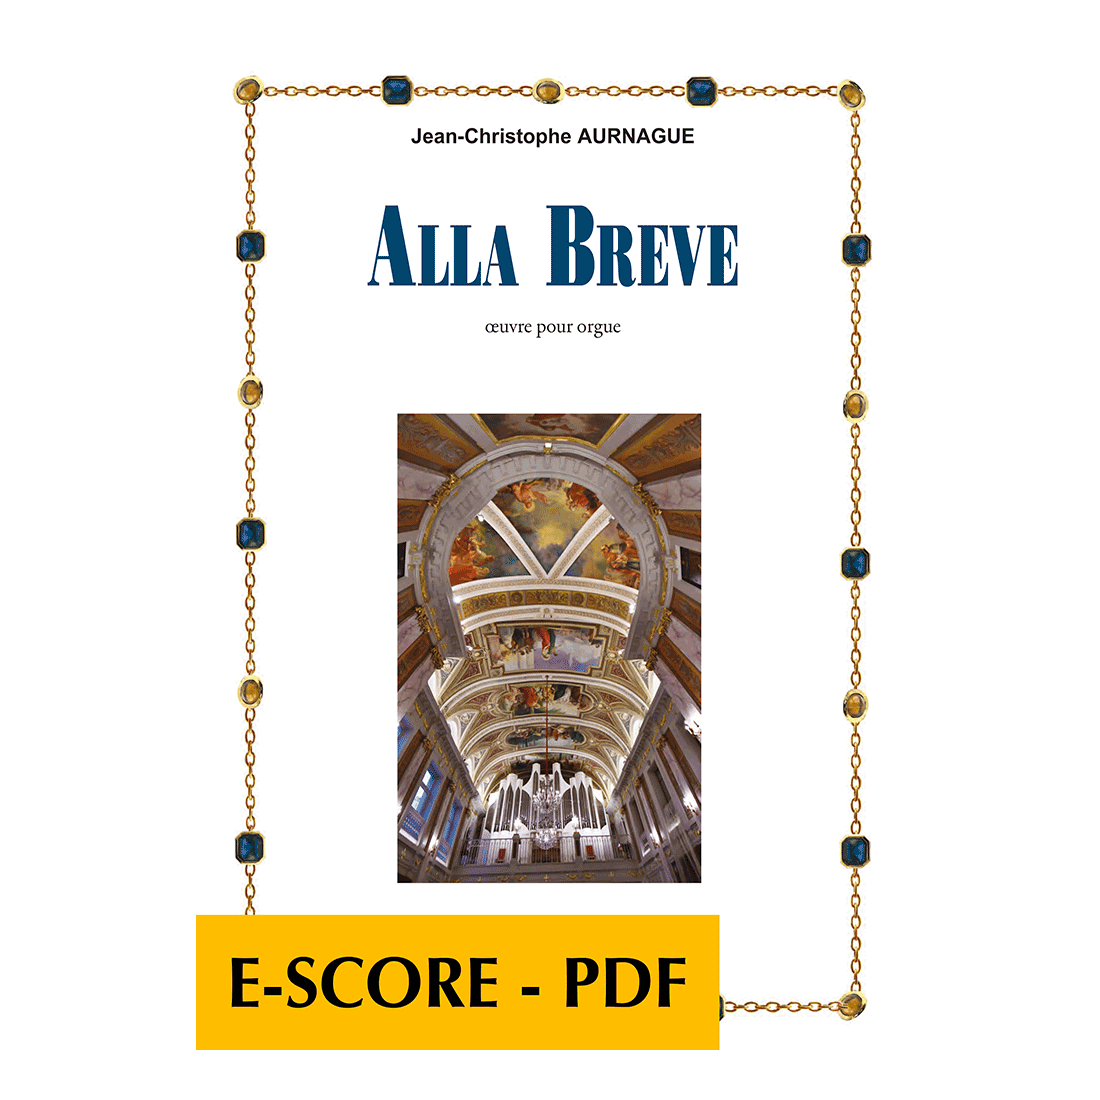 Alla breve für orgel - E-score PDF